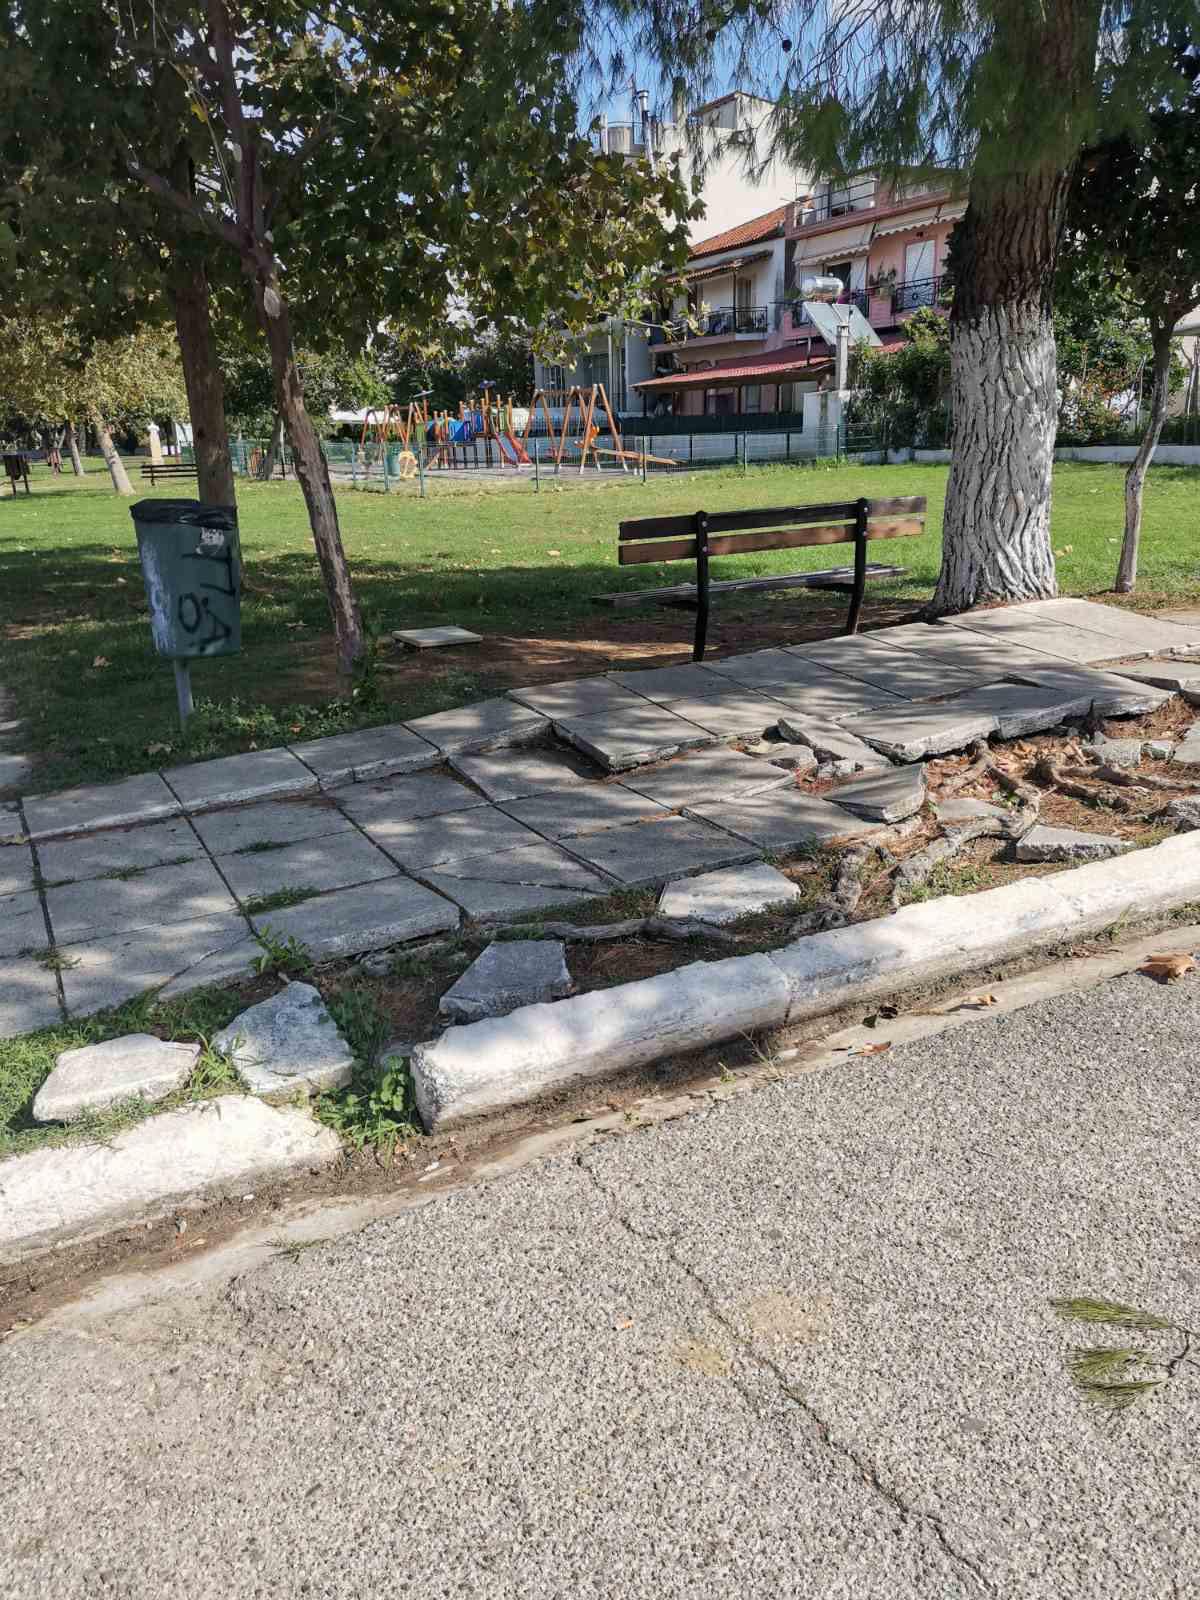 Δήμος Ανδραβίδας-Κυλλήνης: Έργα ανάπλασης και αποκατάστασης σε όλες τις περιοχές του Δήμου (photos)